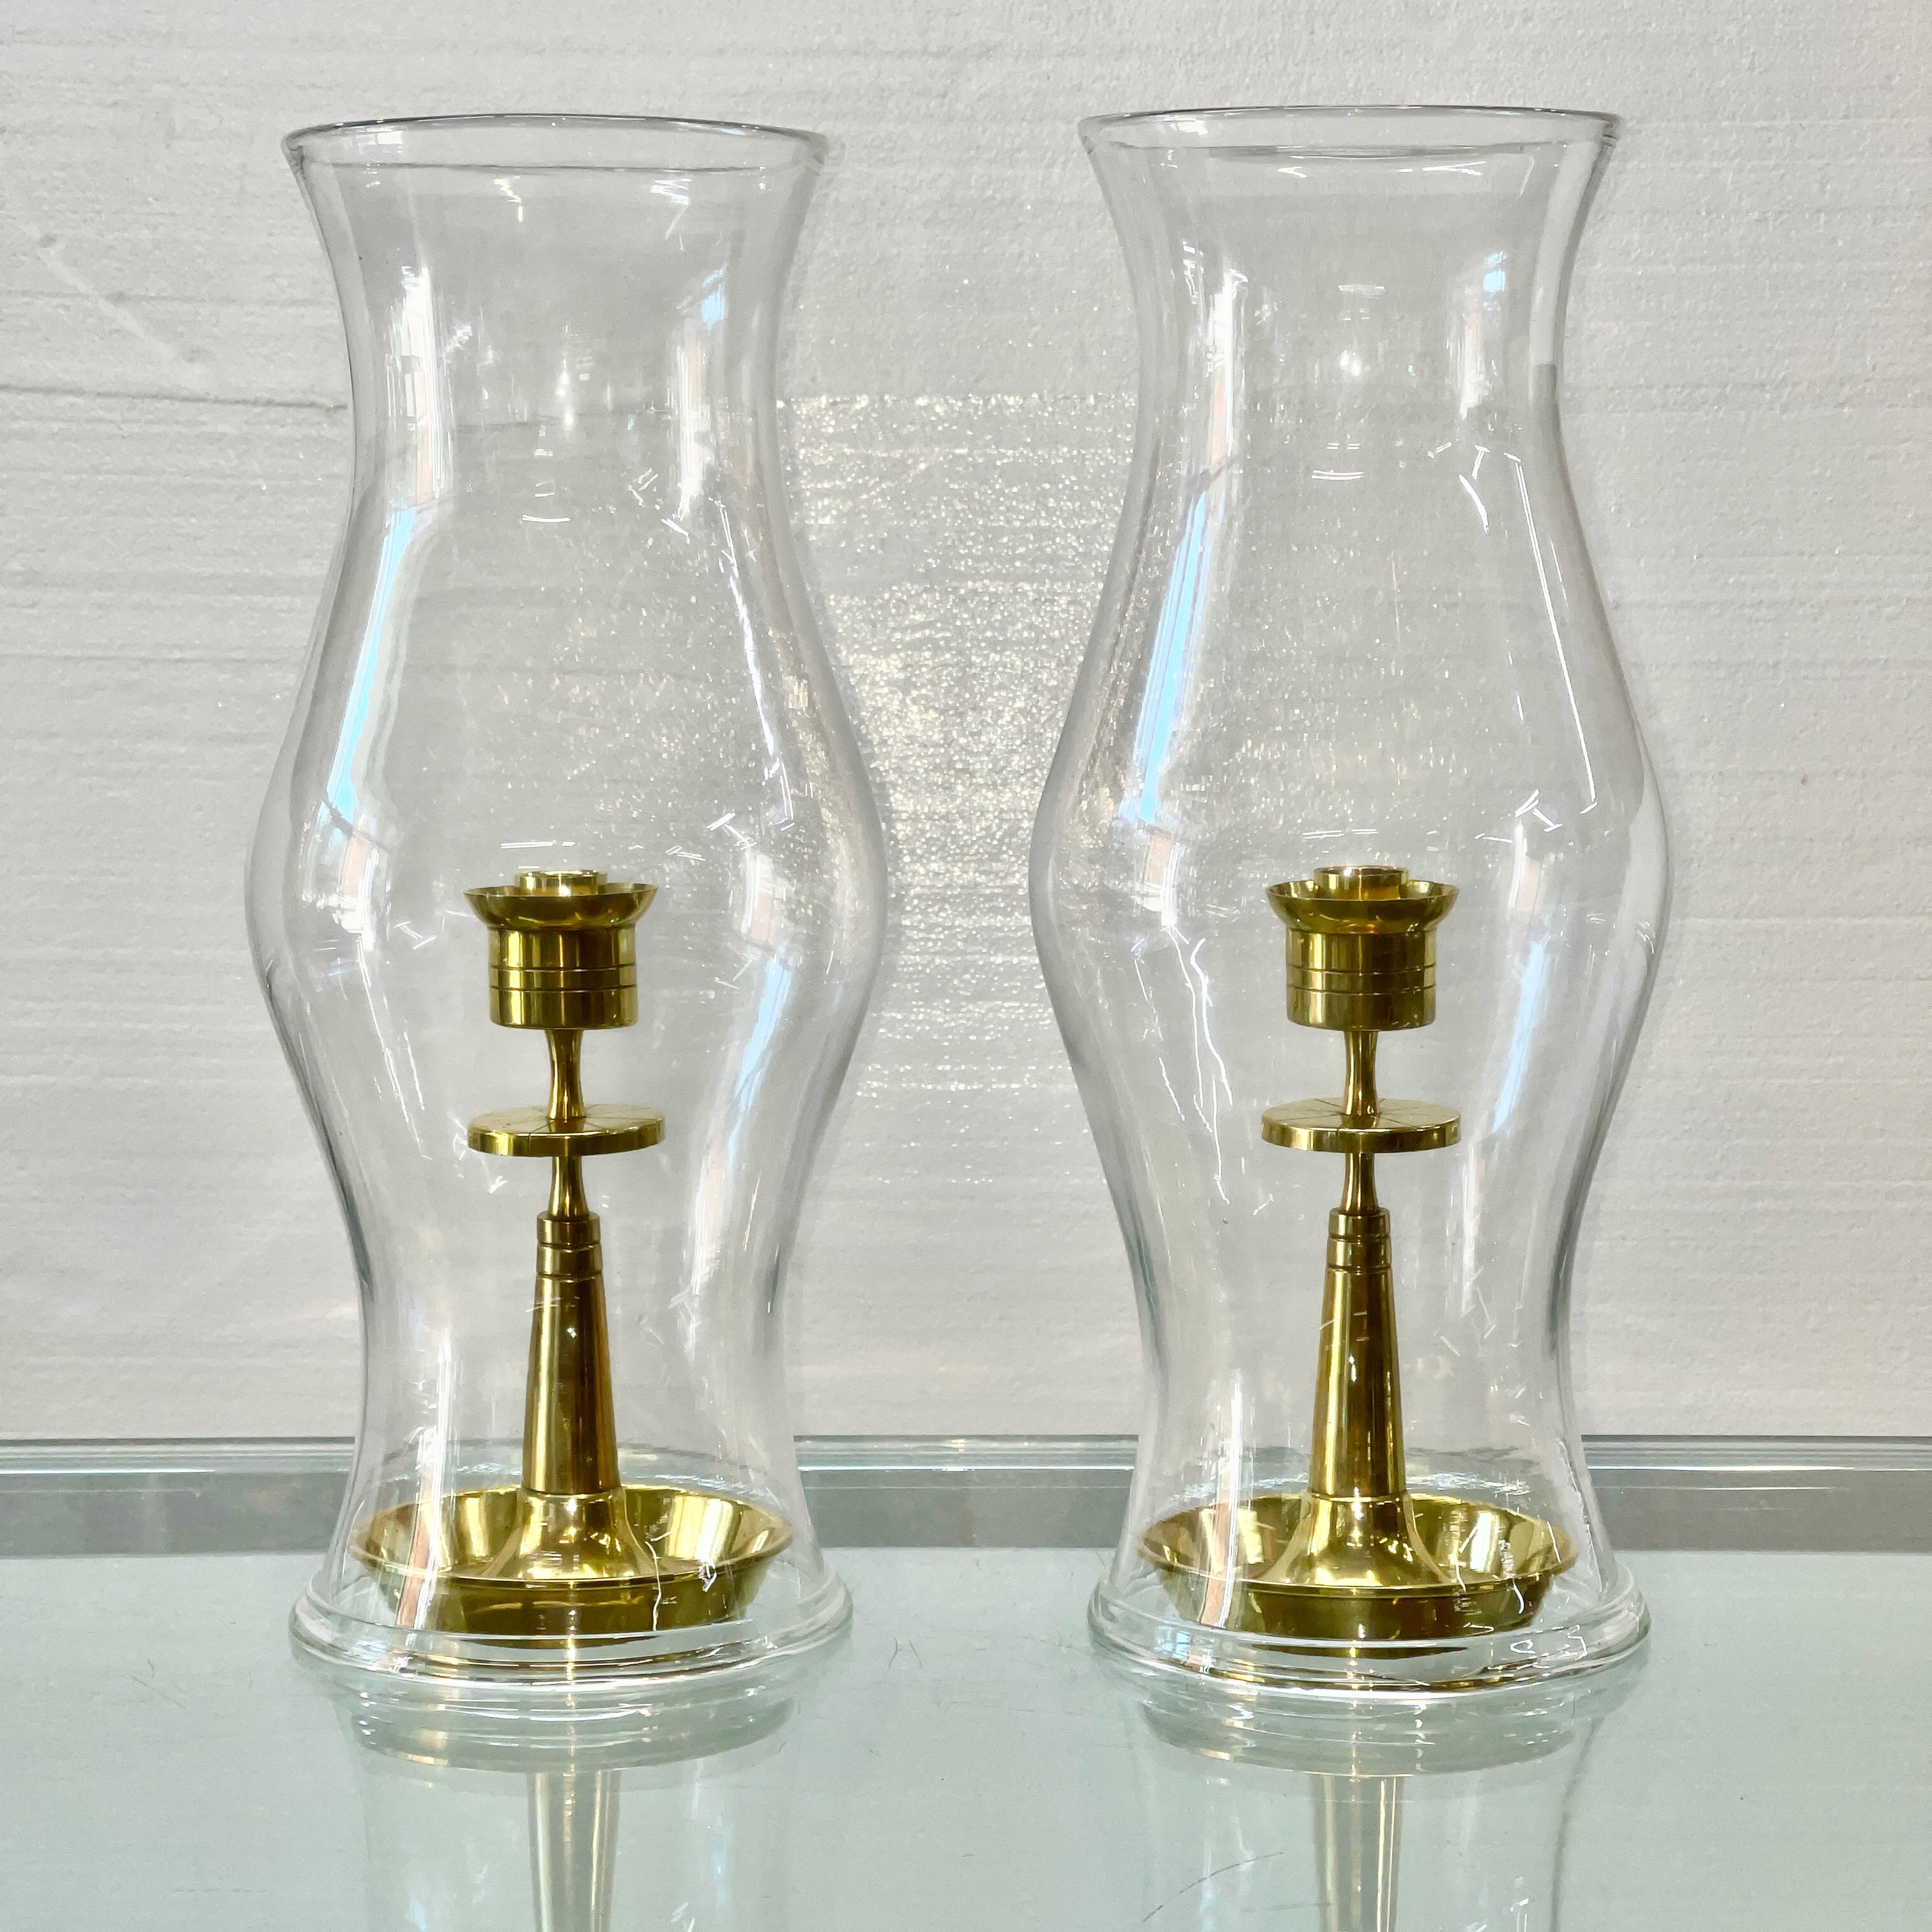 Ein Paar Messing-Kerzenhalter aus der von Tommi Parzinger entworfenen Messingkollektion von Dorlyn Silversmiths aus den frühen 1950er Jahren mit einem Paar geformter Hurricane-Glasschirme.

Maße: Die Kerzenhalter sind 9,5